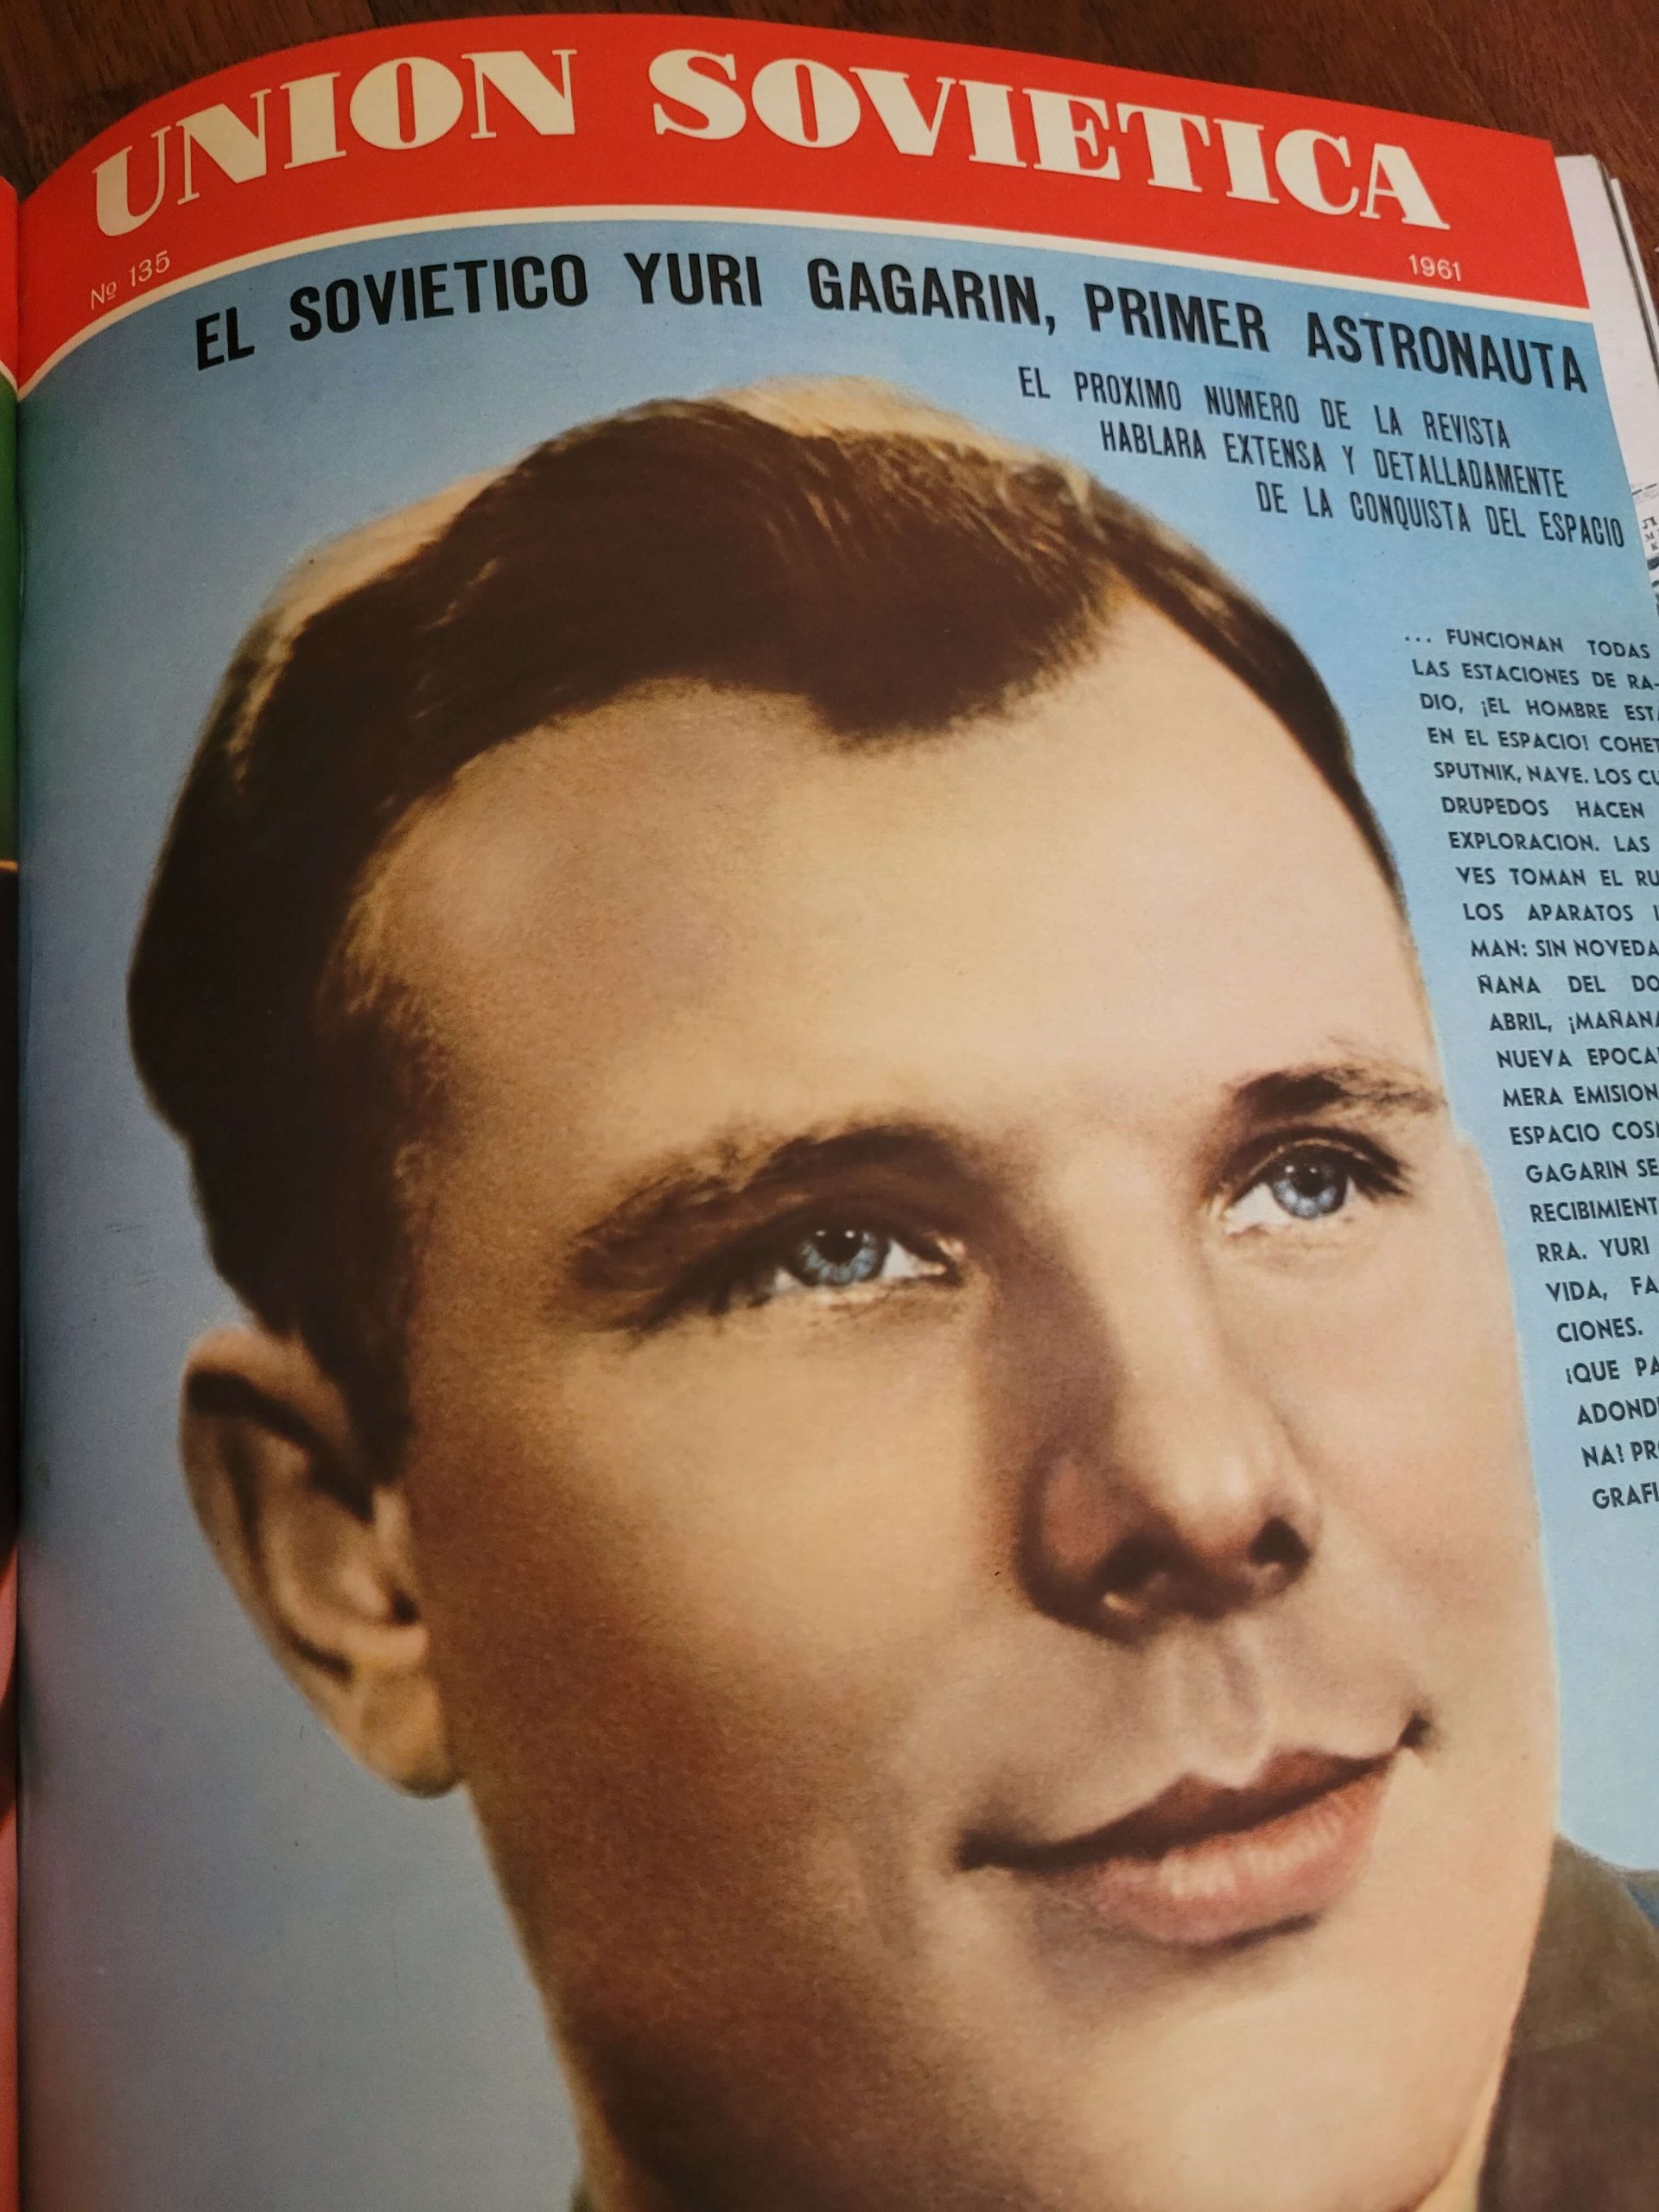 (1961) Revista Unión Soviética -1961 año completo-